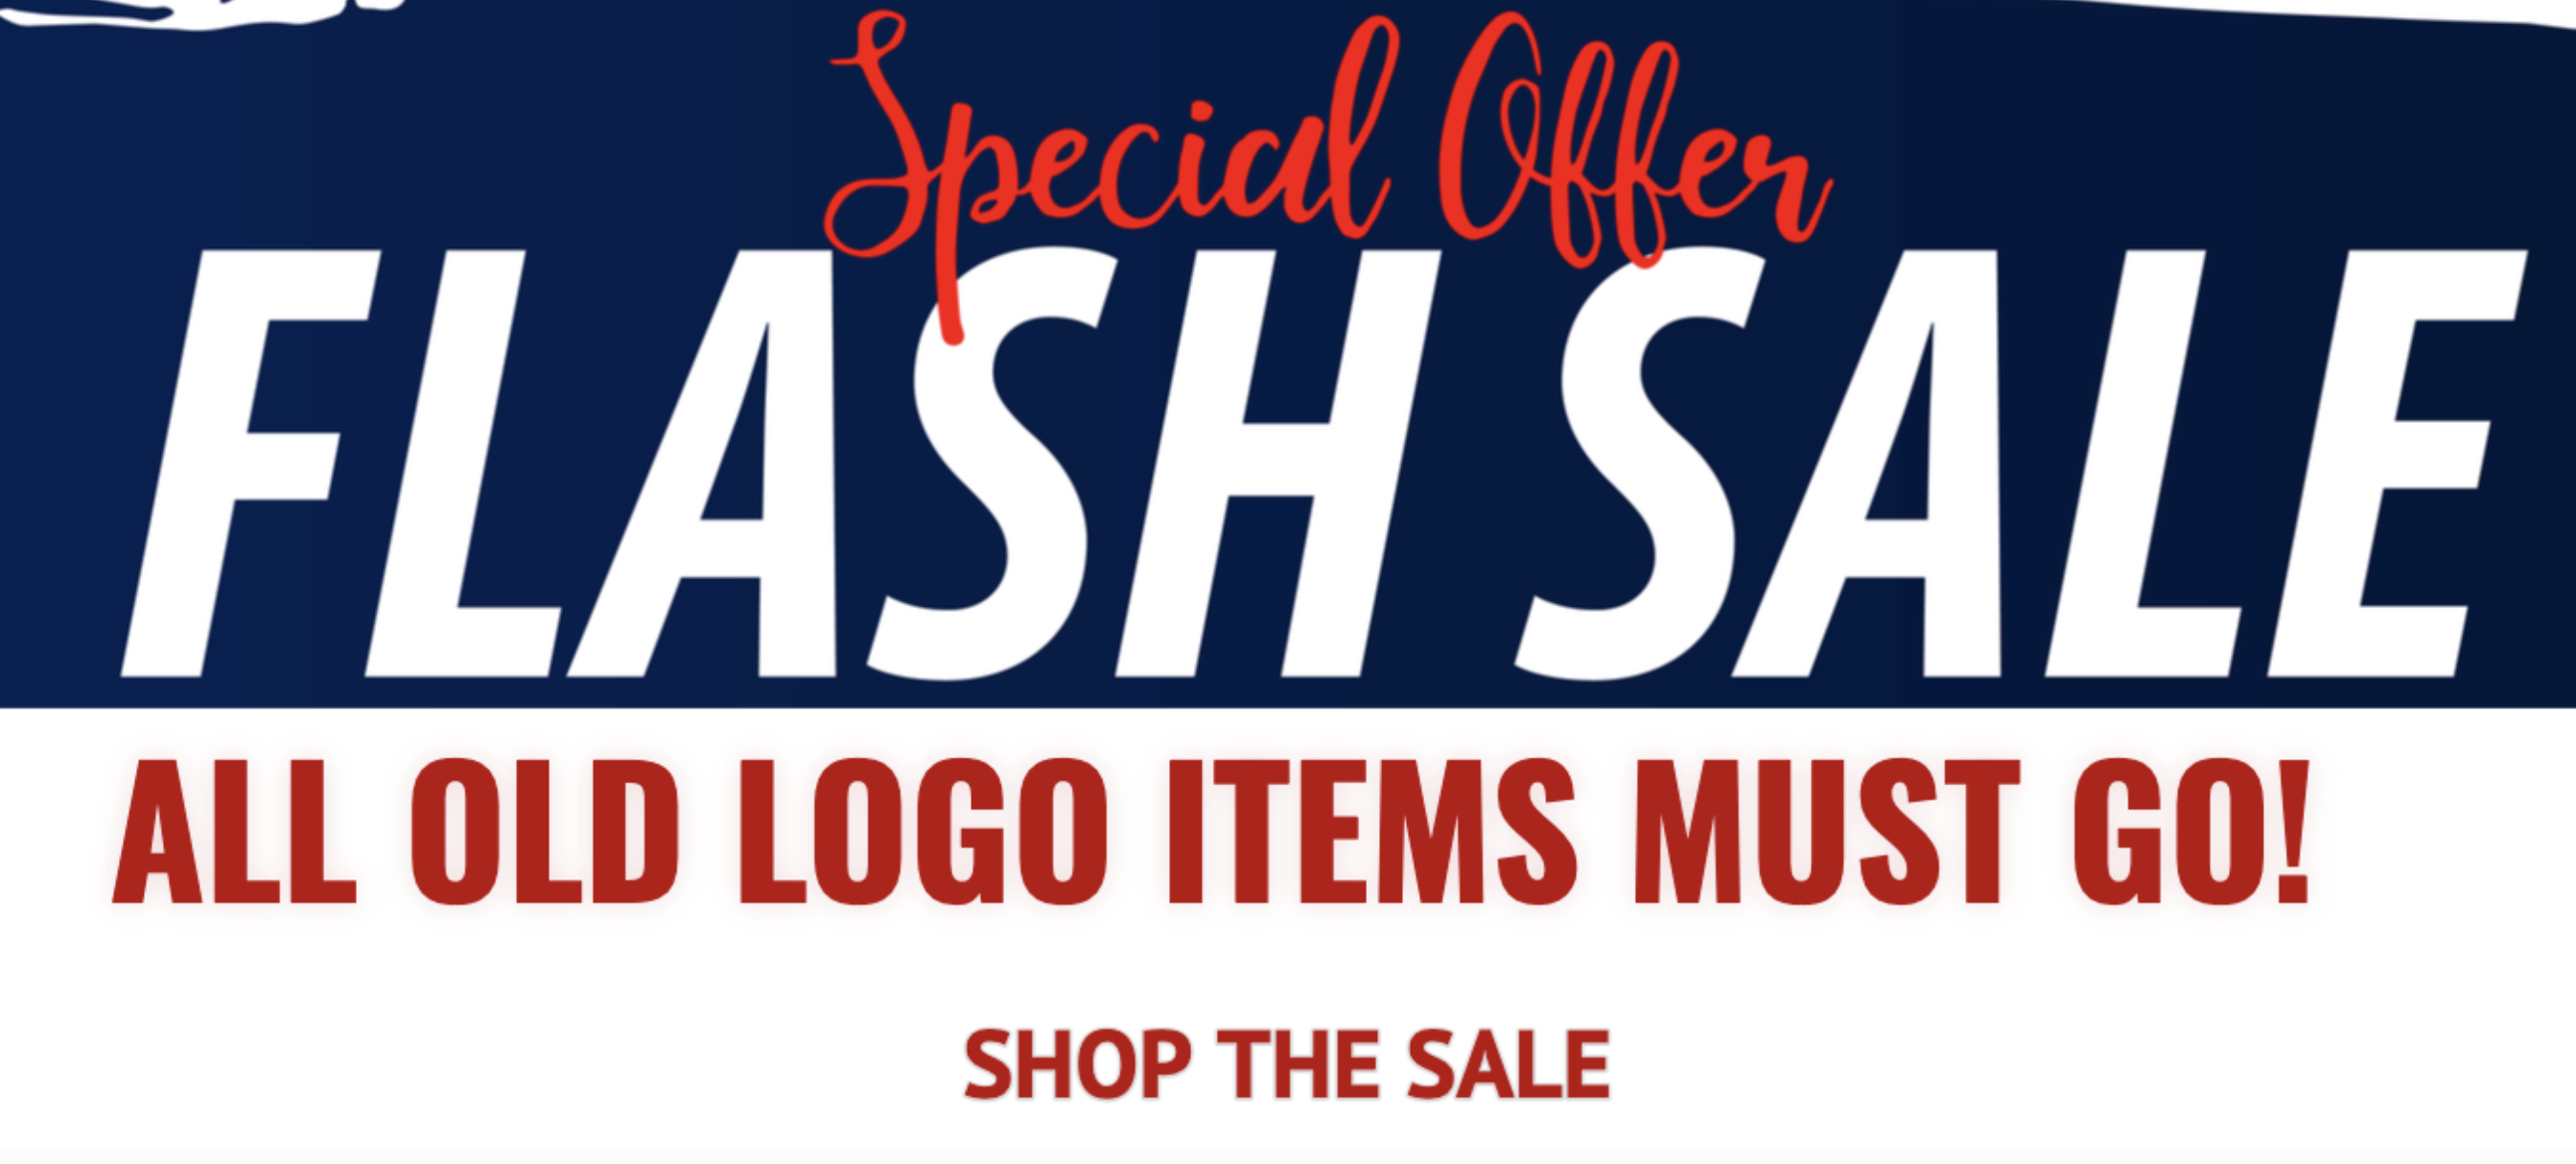 old logo sale